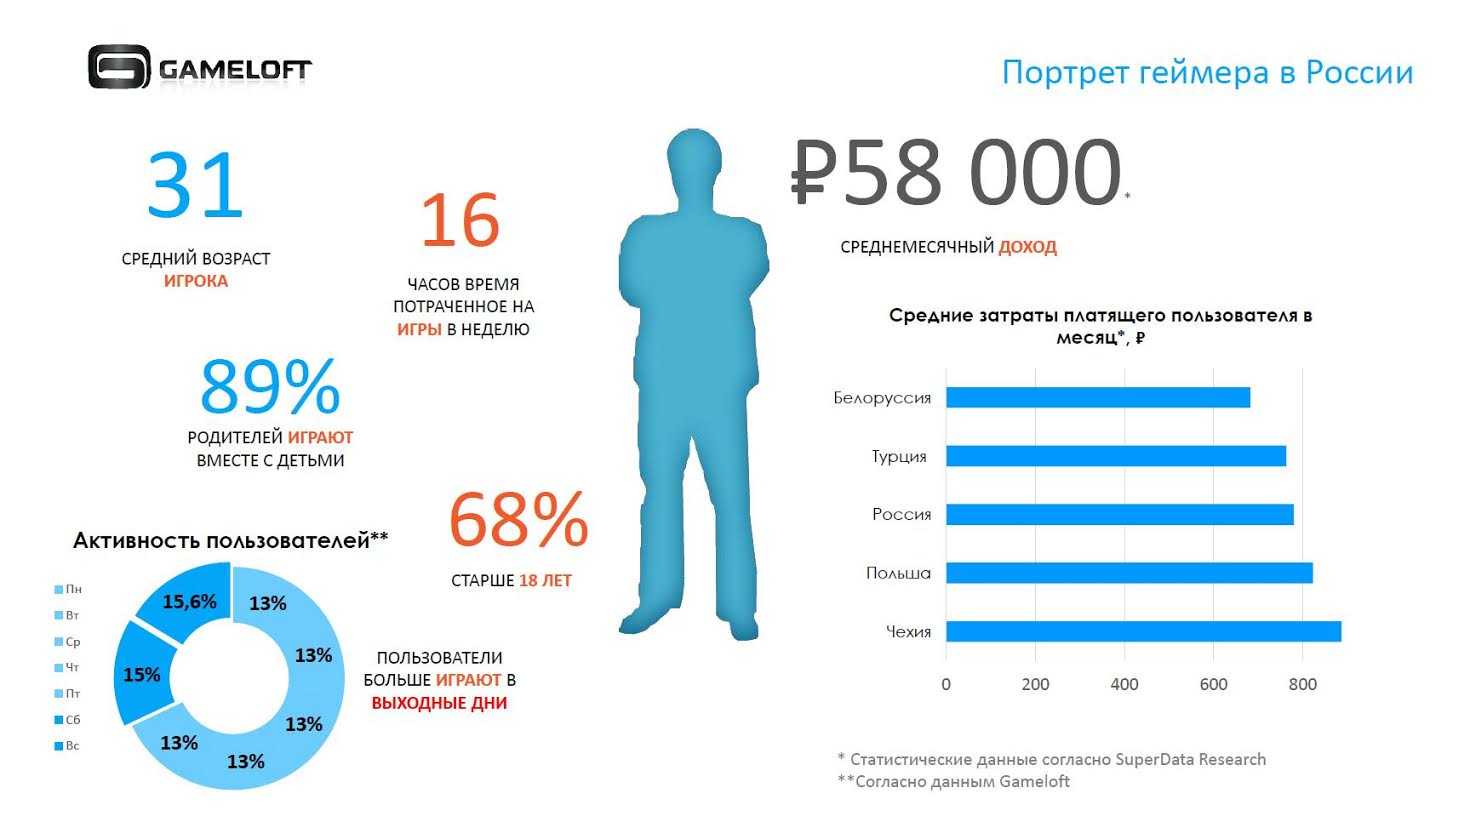 Средний Возраст геймера в России